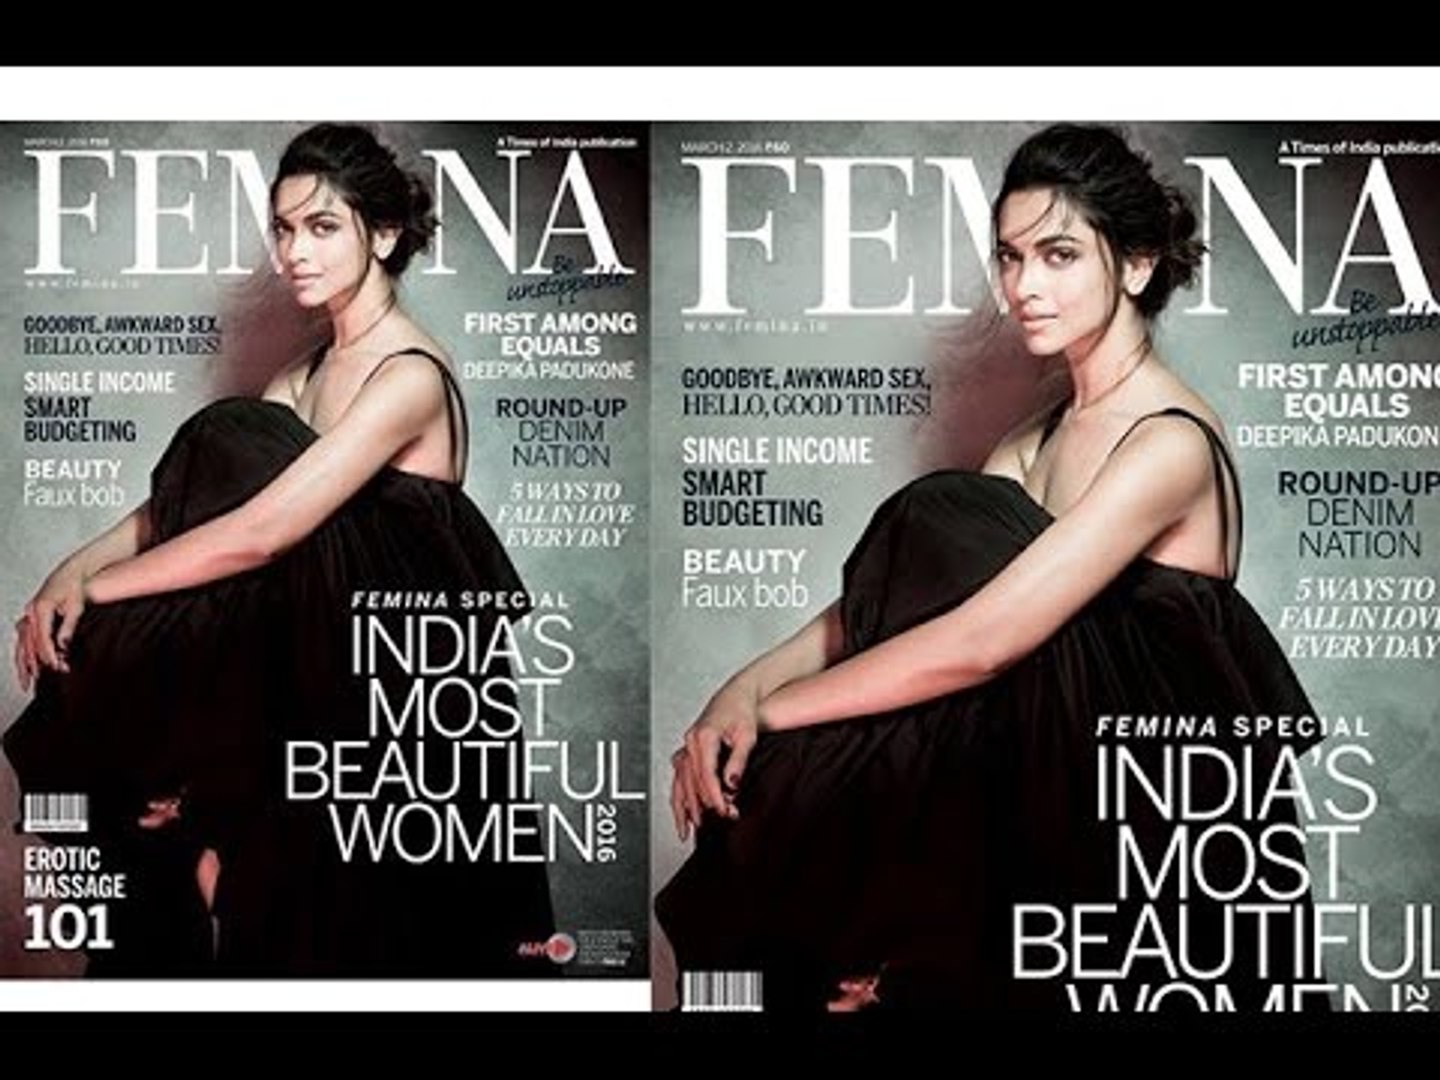 1440px x 1080px - Deepika Padukone â€œIndia's Most Beautifulâ€ Femina Cover ! - video Dailymotion